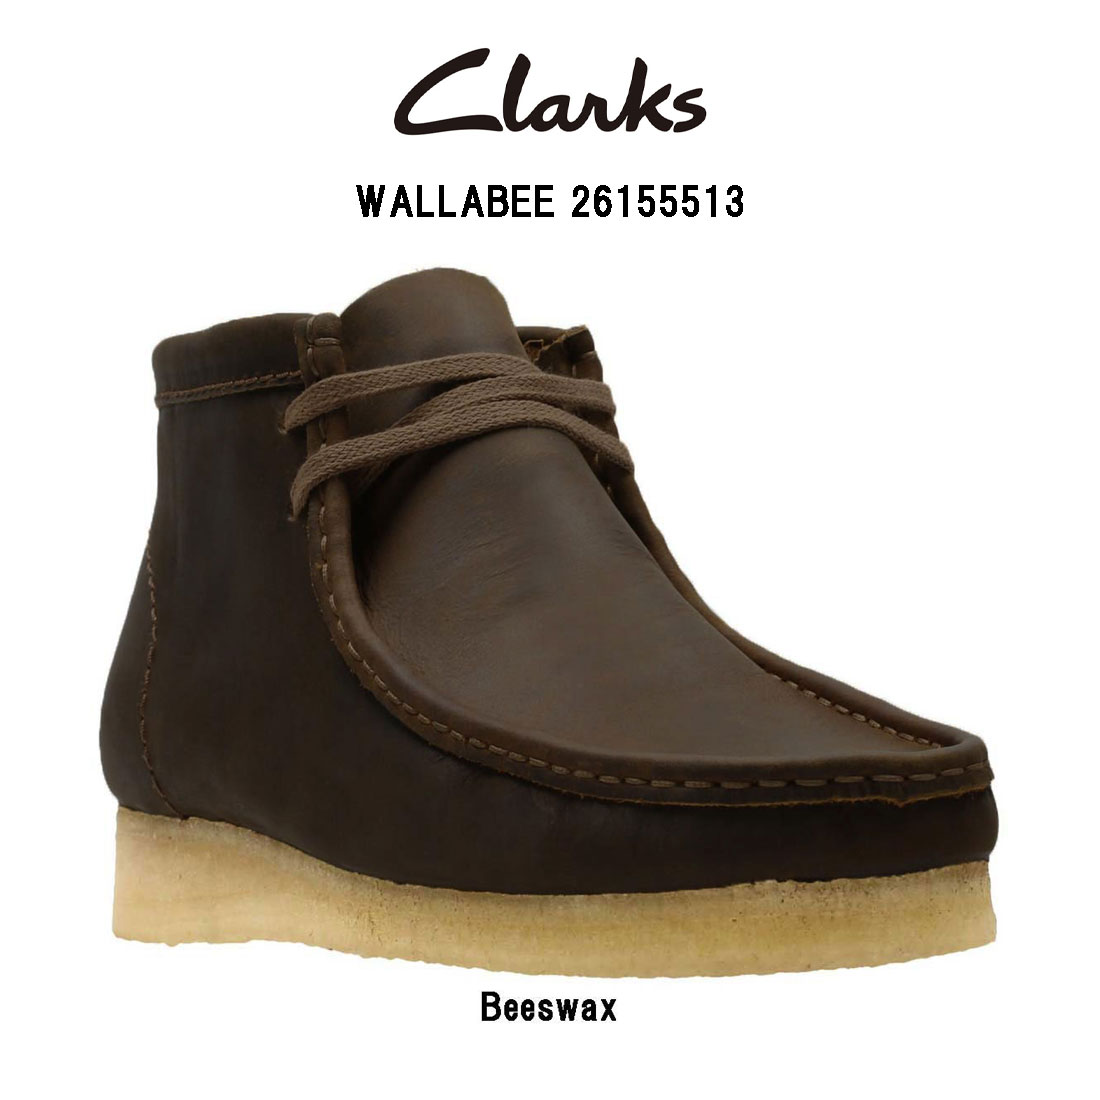 CLARKS(クラークス)メンズ ワラビー ブーツ レザー クレープソール スタンダード シューズ カジュアル WALLABEE 26155513